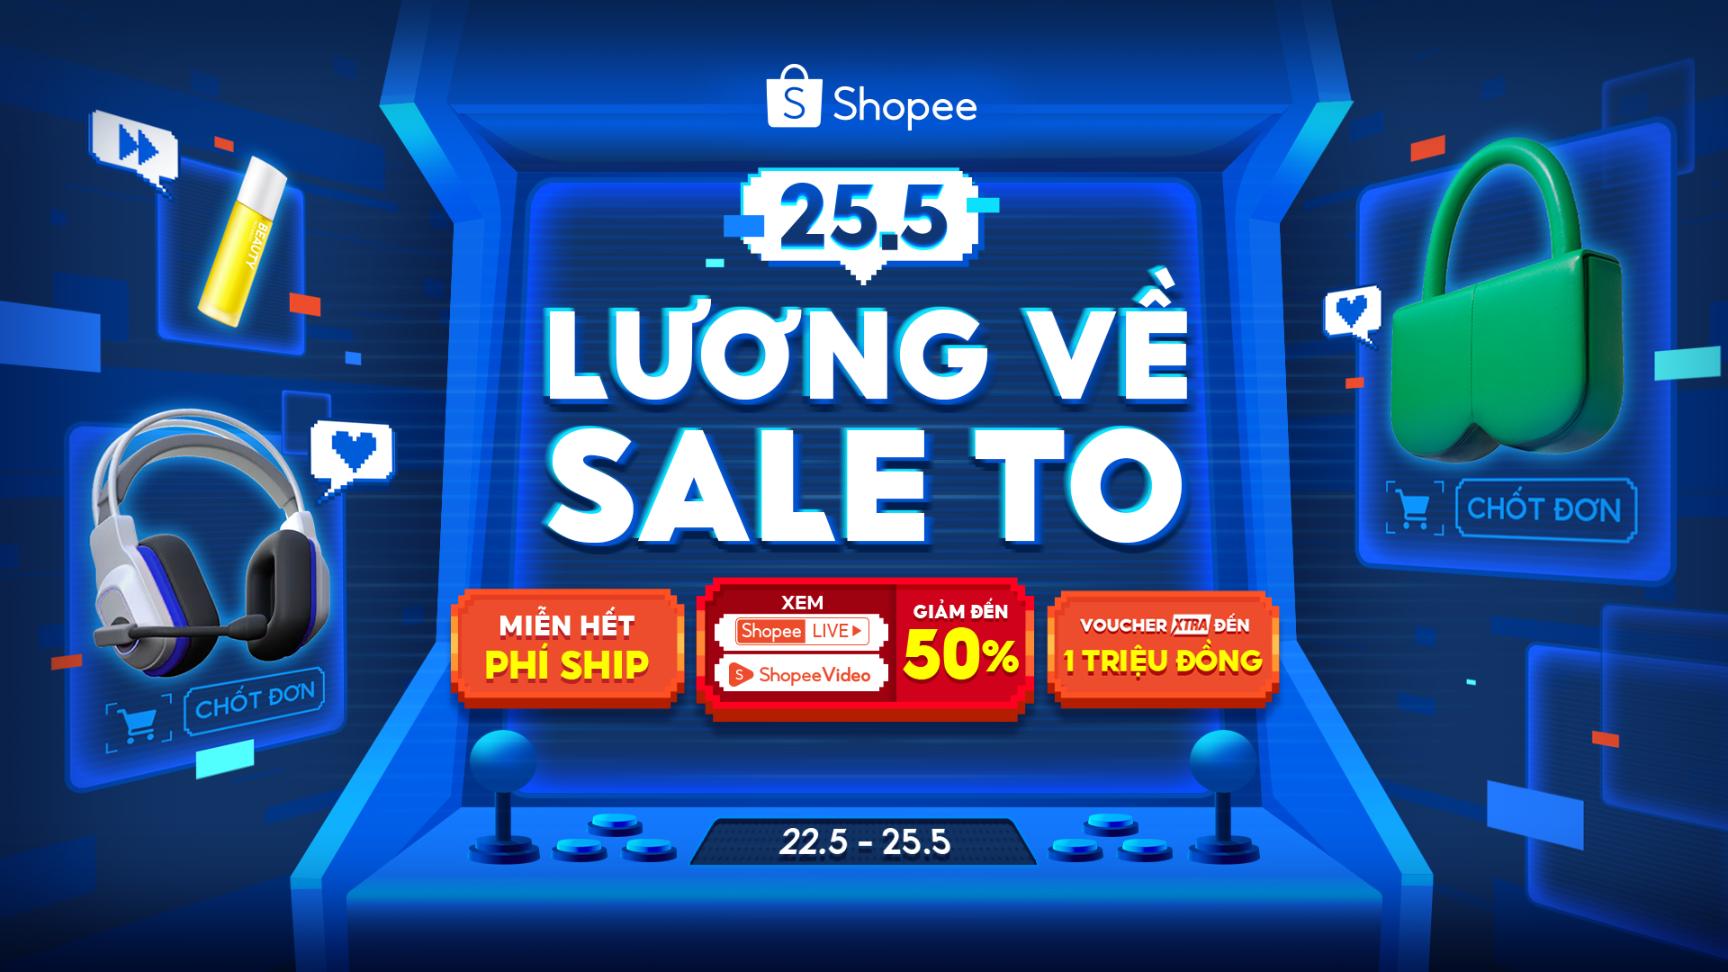 Shopee 1 Shopee bật mí loạt ưu đãi hấp dẫn đến 50% và voucher 1 triệu đồng tại 25.5 Lương Về Sale To